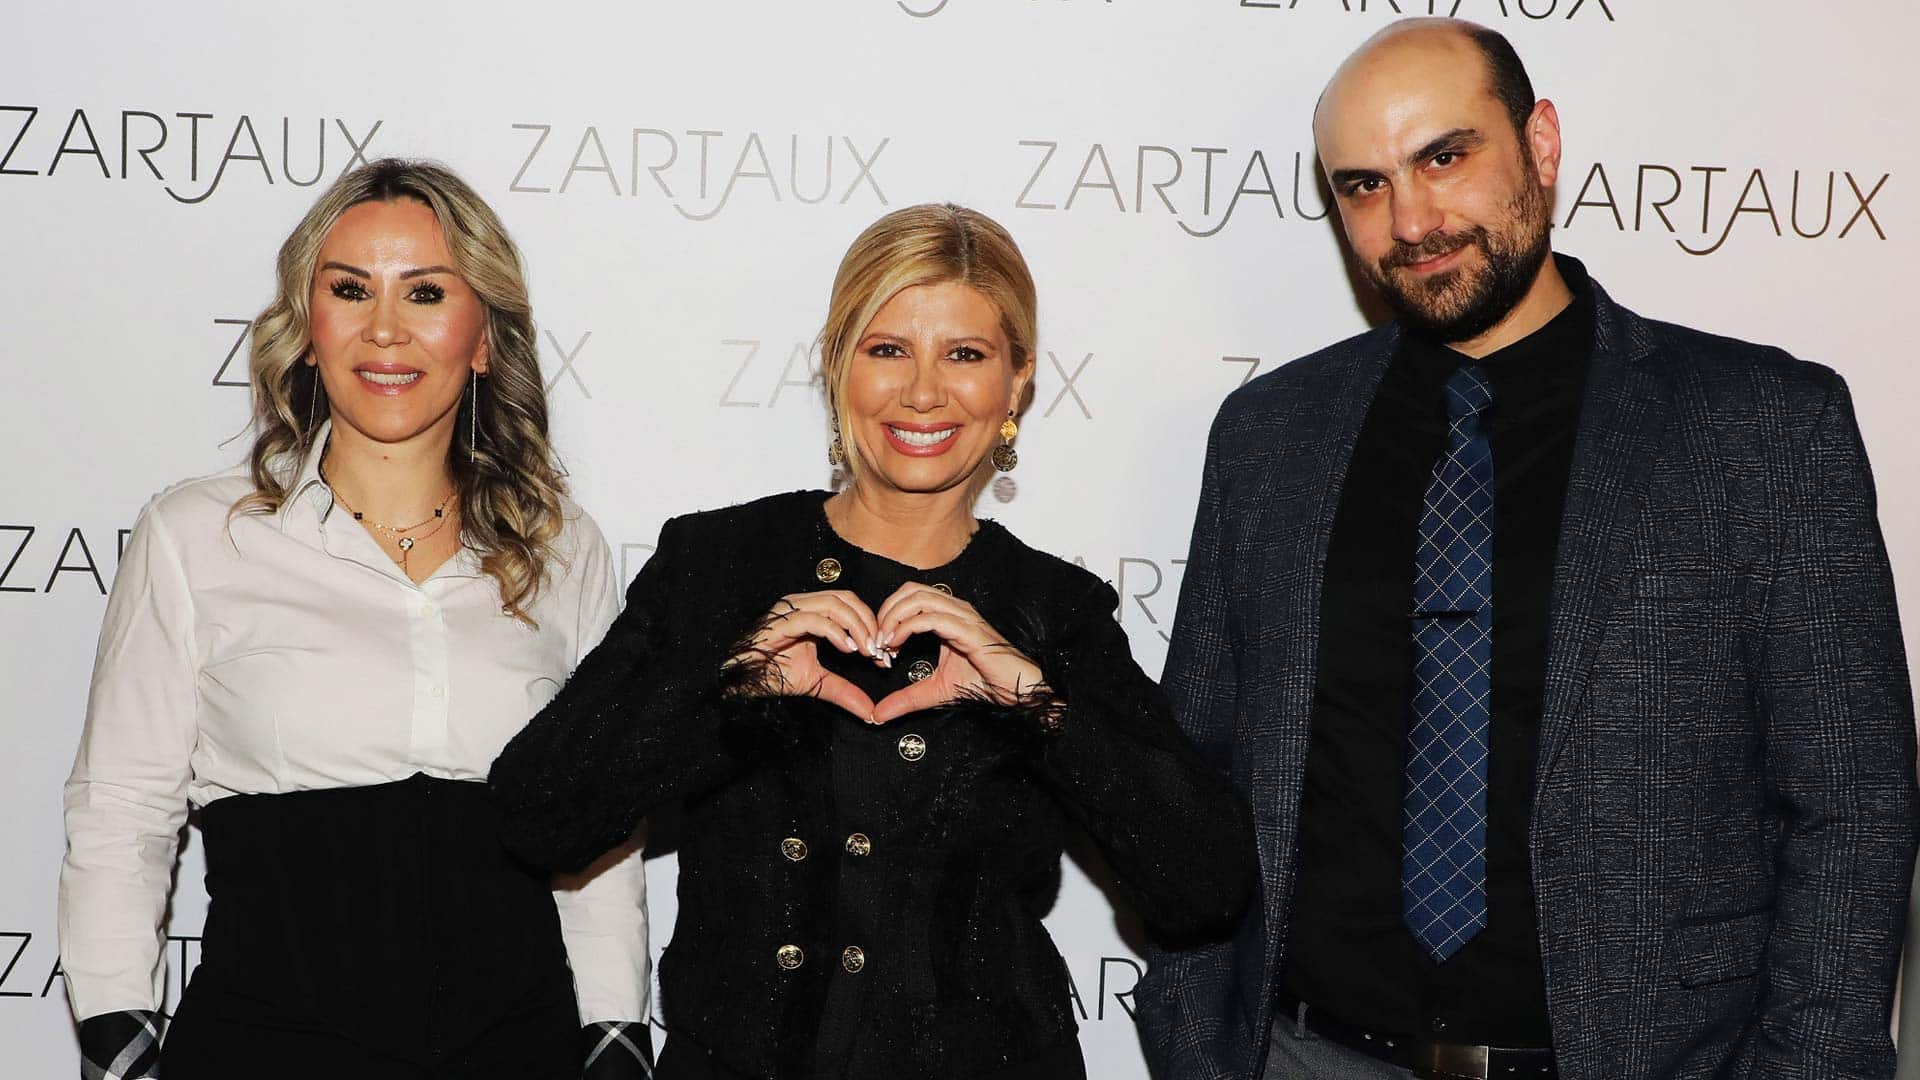 Zartaux: Η λαμπερή εκδήλωση της κορυφαίας εταιρείας προϊόντων ομορφιάς